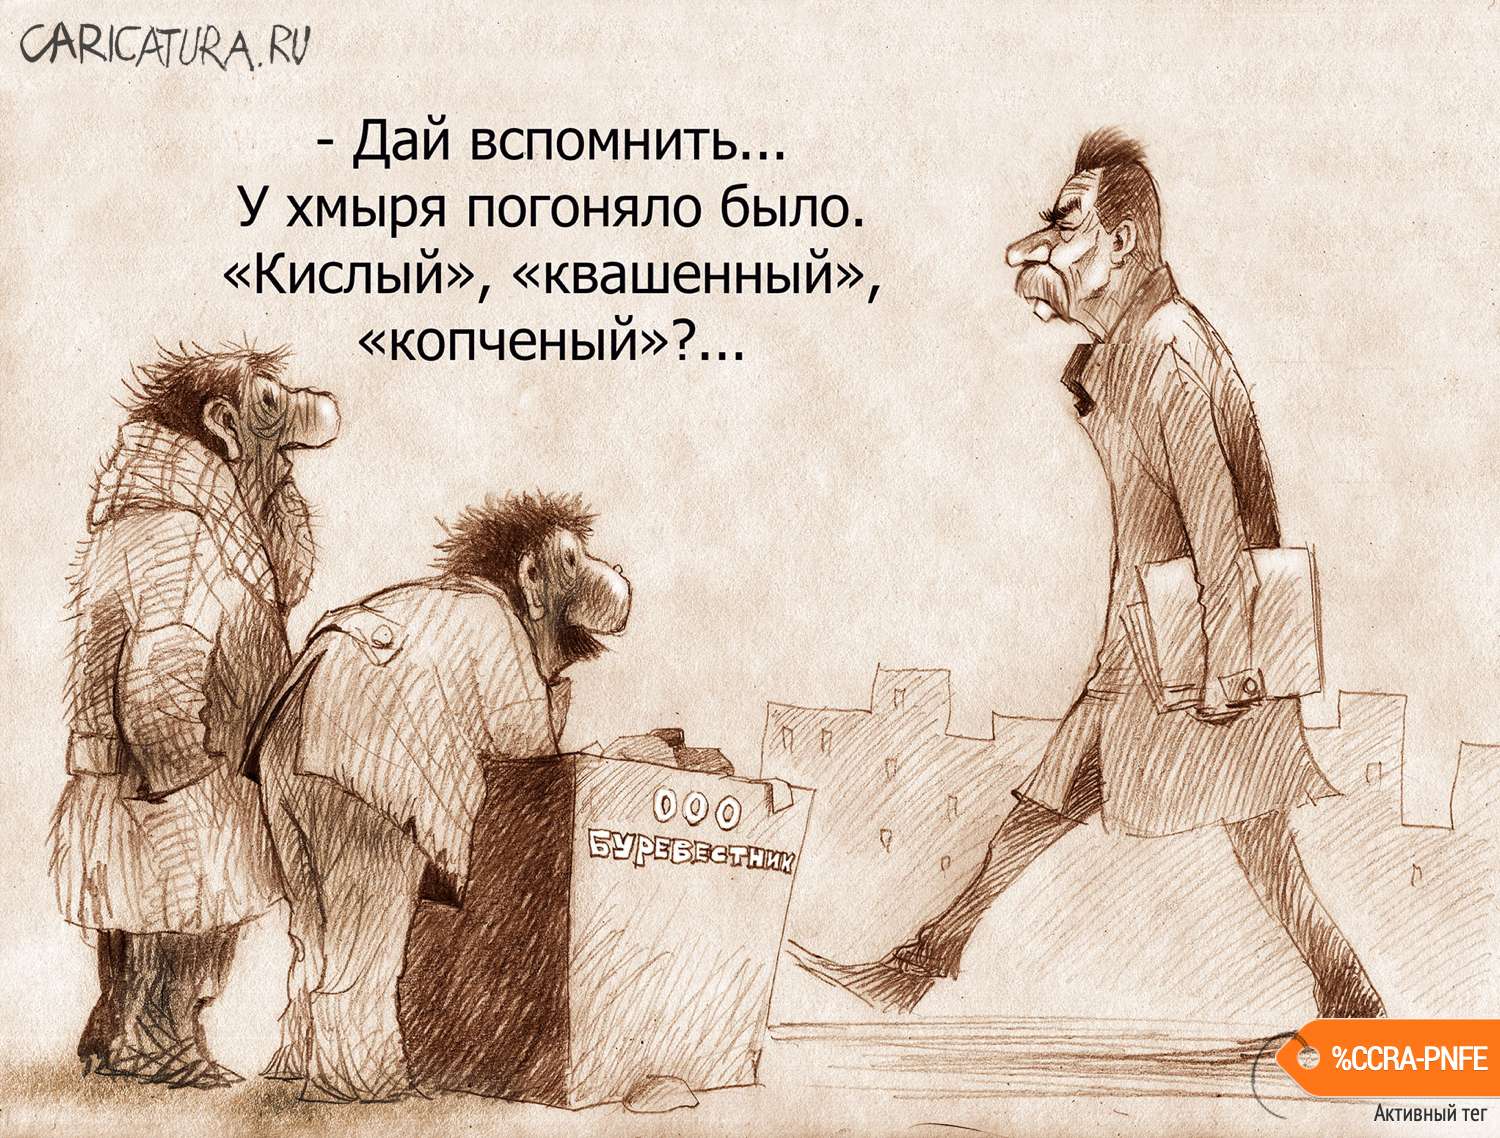 Карикатура "Литераторы...", Александр Попов